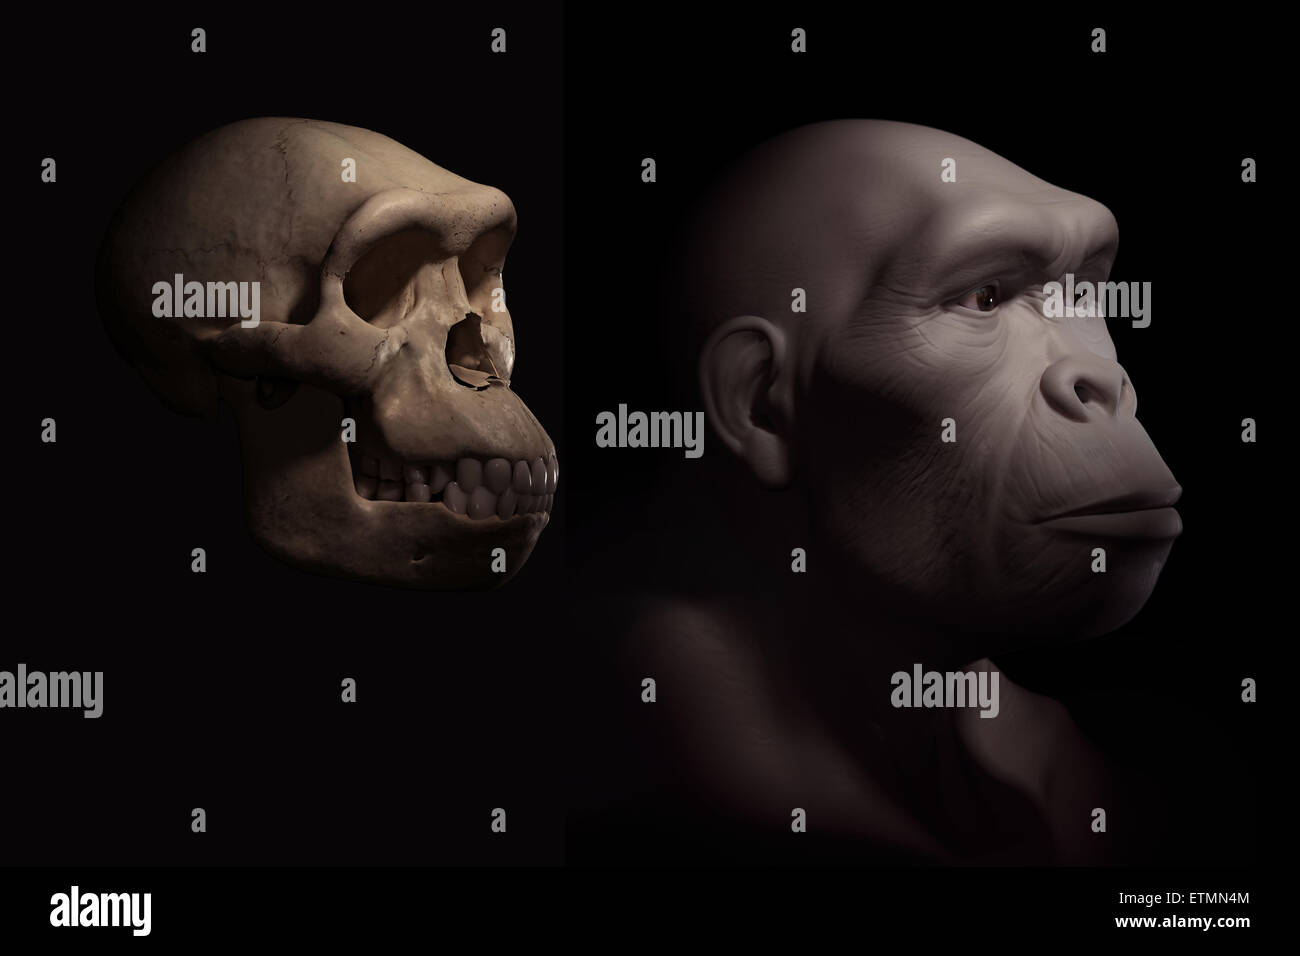 Rappresentazione di un Homo habilis accanto a un Homo habilis cranio per confronto. Homo habilis è un genere estinto di ominidi e predecessore di Homo Sapiens. Foto Stock